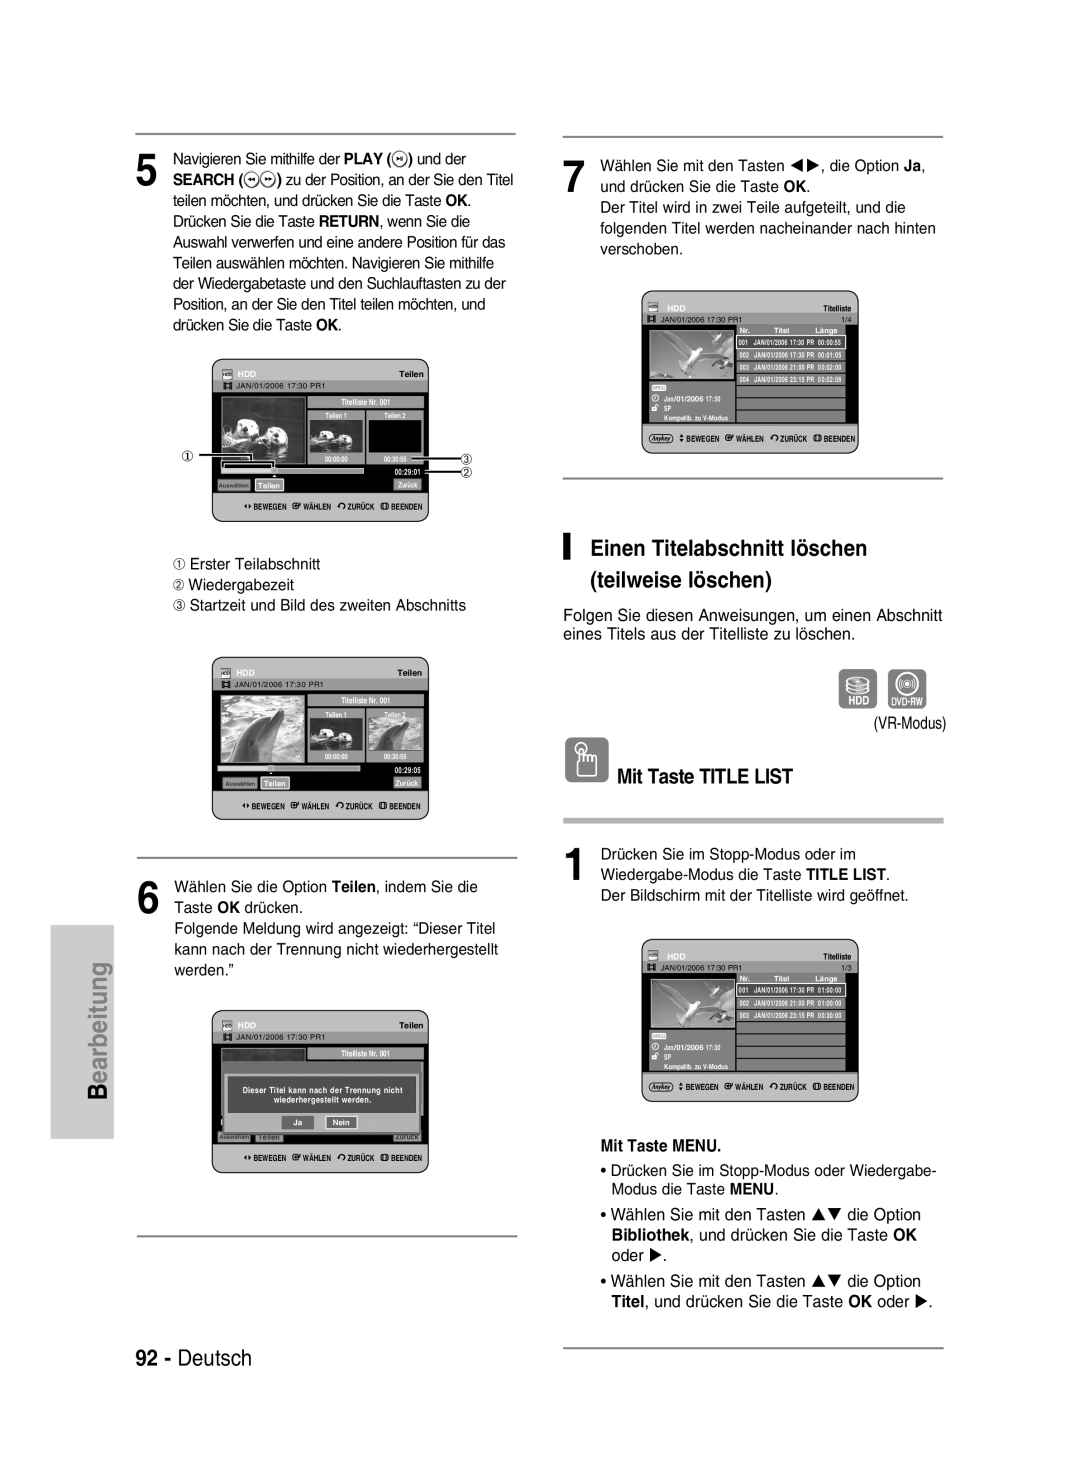 Samsung DVD-HR730/XEC manual Deutsch, Einen Titelabschnitt löschen teilweise löschen, Mit Taste TITLE LIST, Mit Taste MENU 